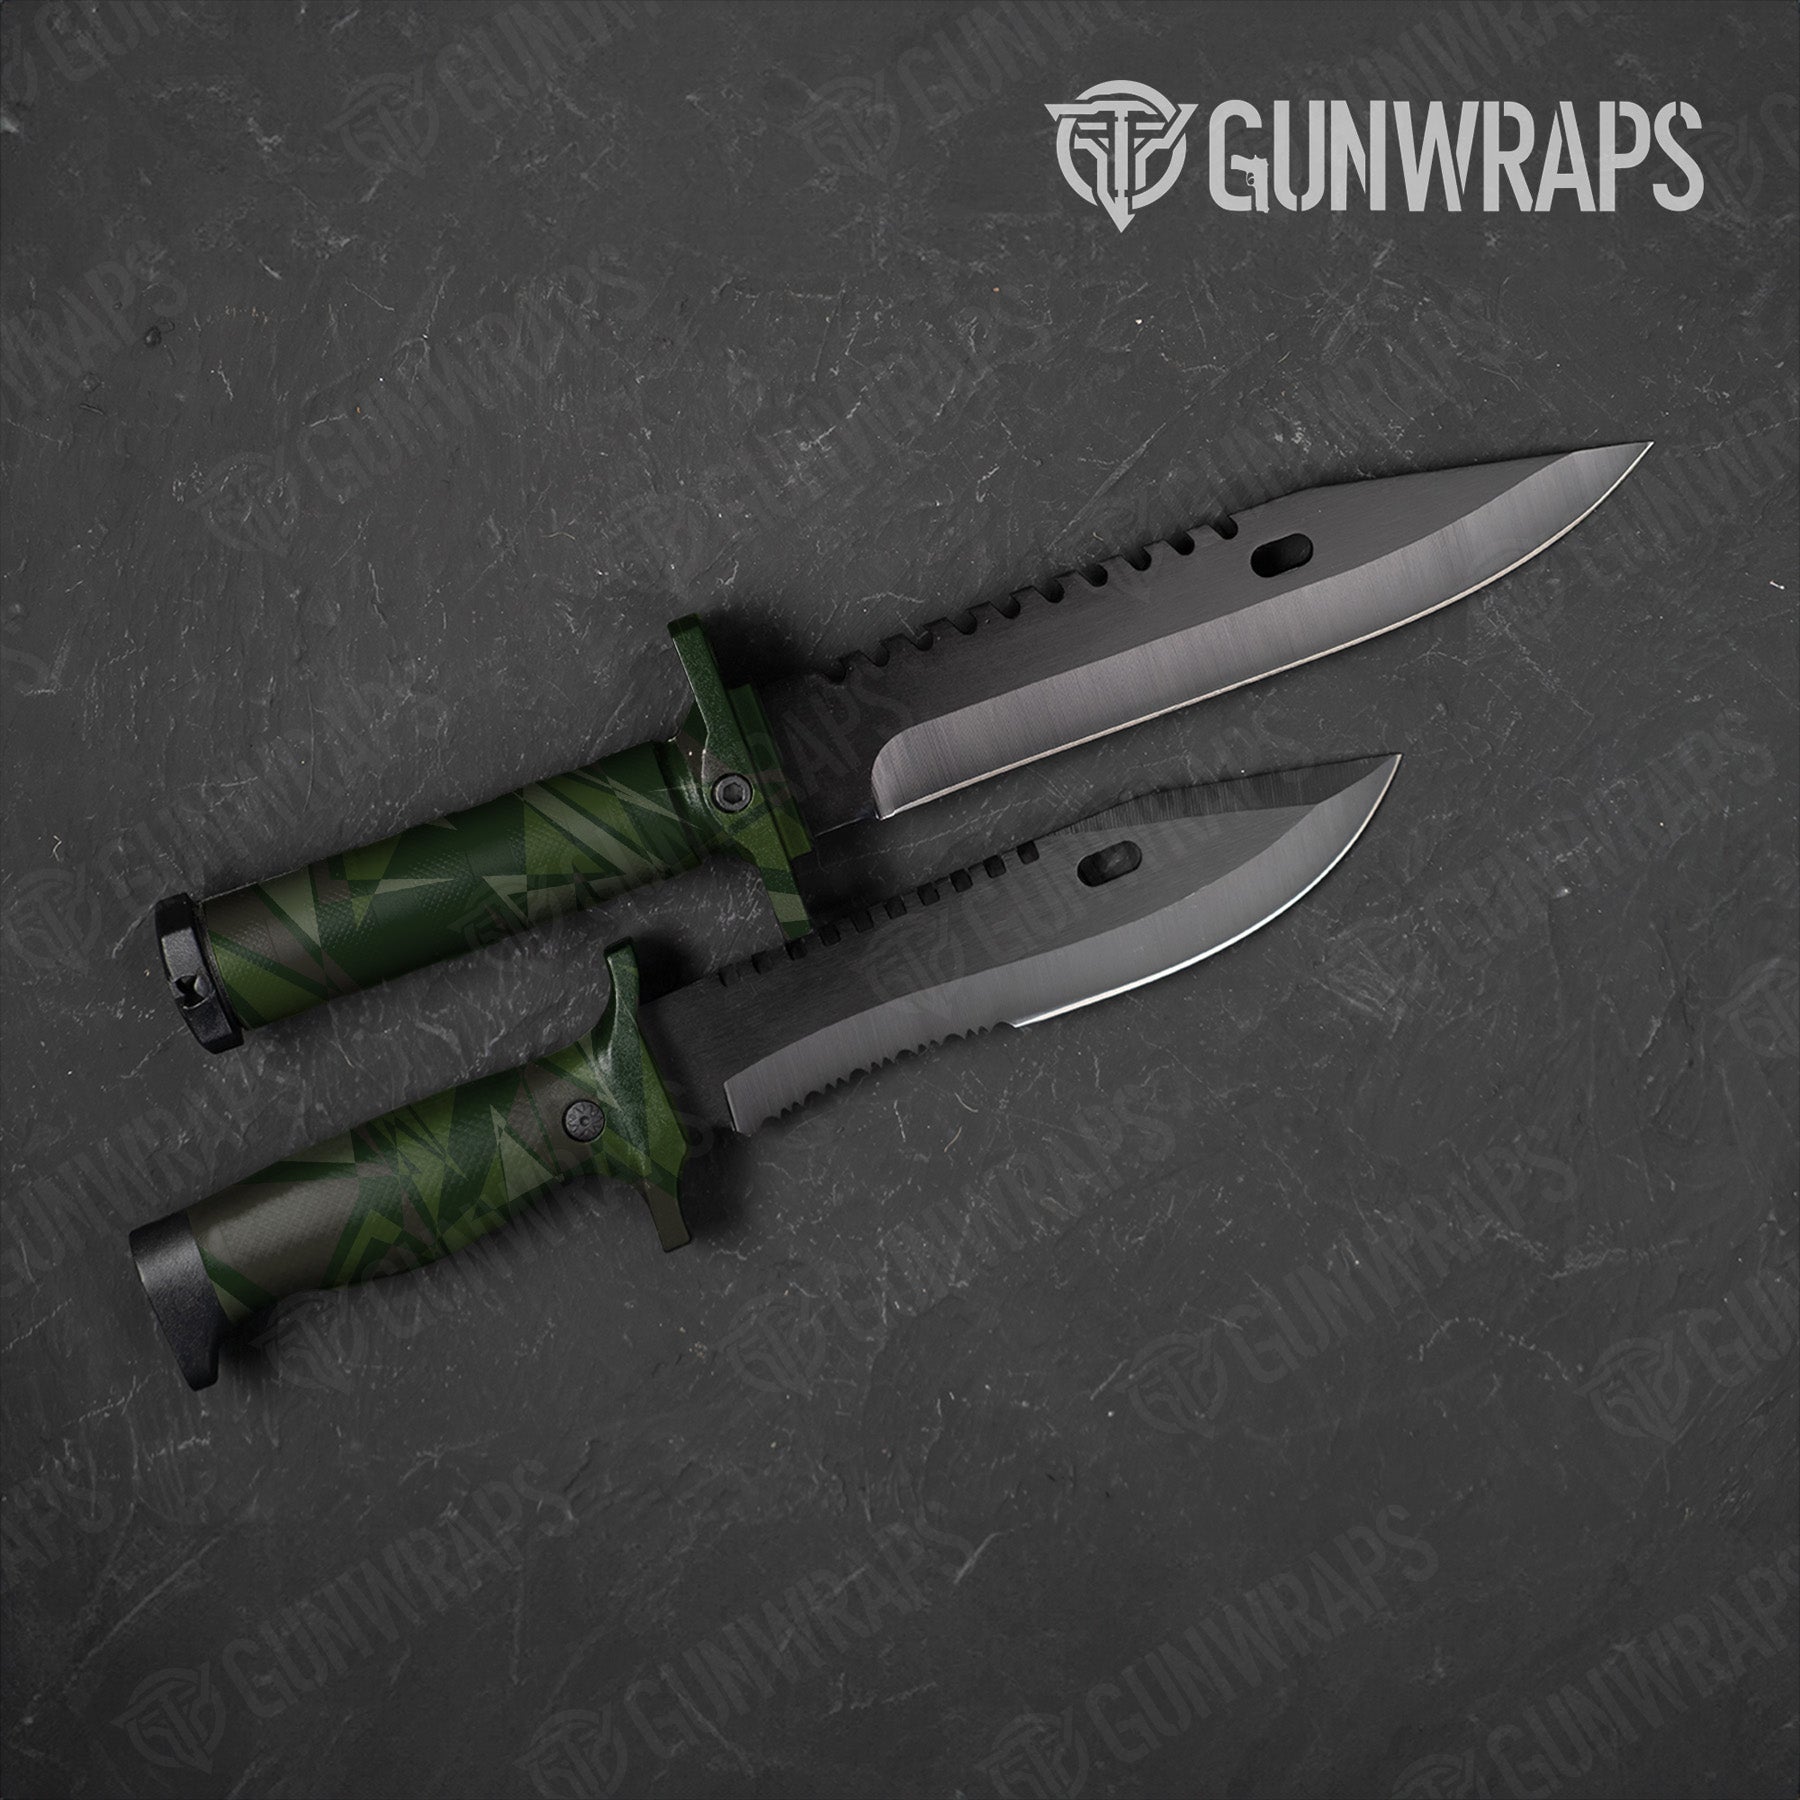 Sharp Army Dark Green Camo Knife Gear Skin Vinyl Wrap